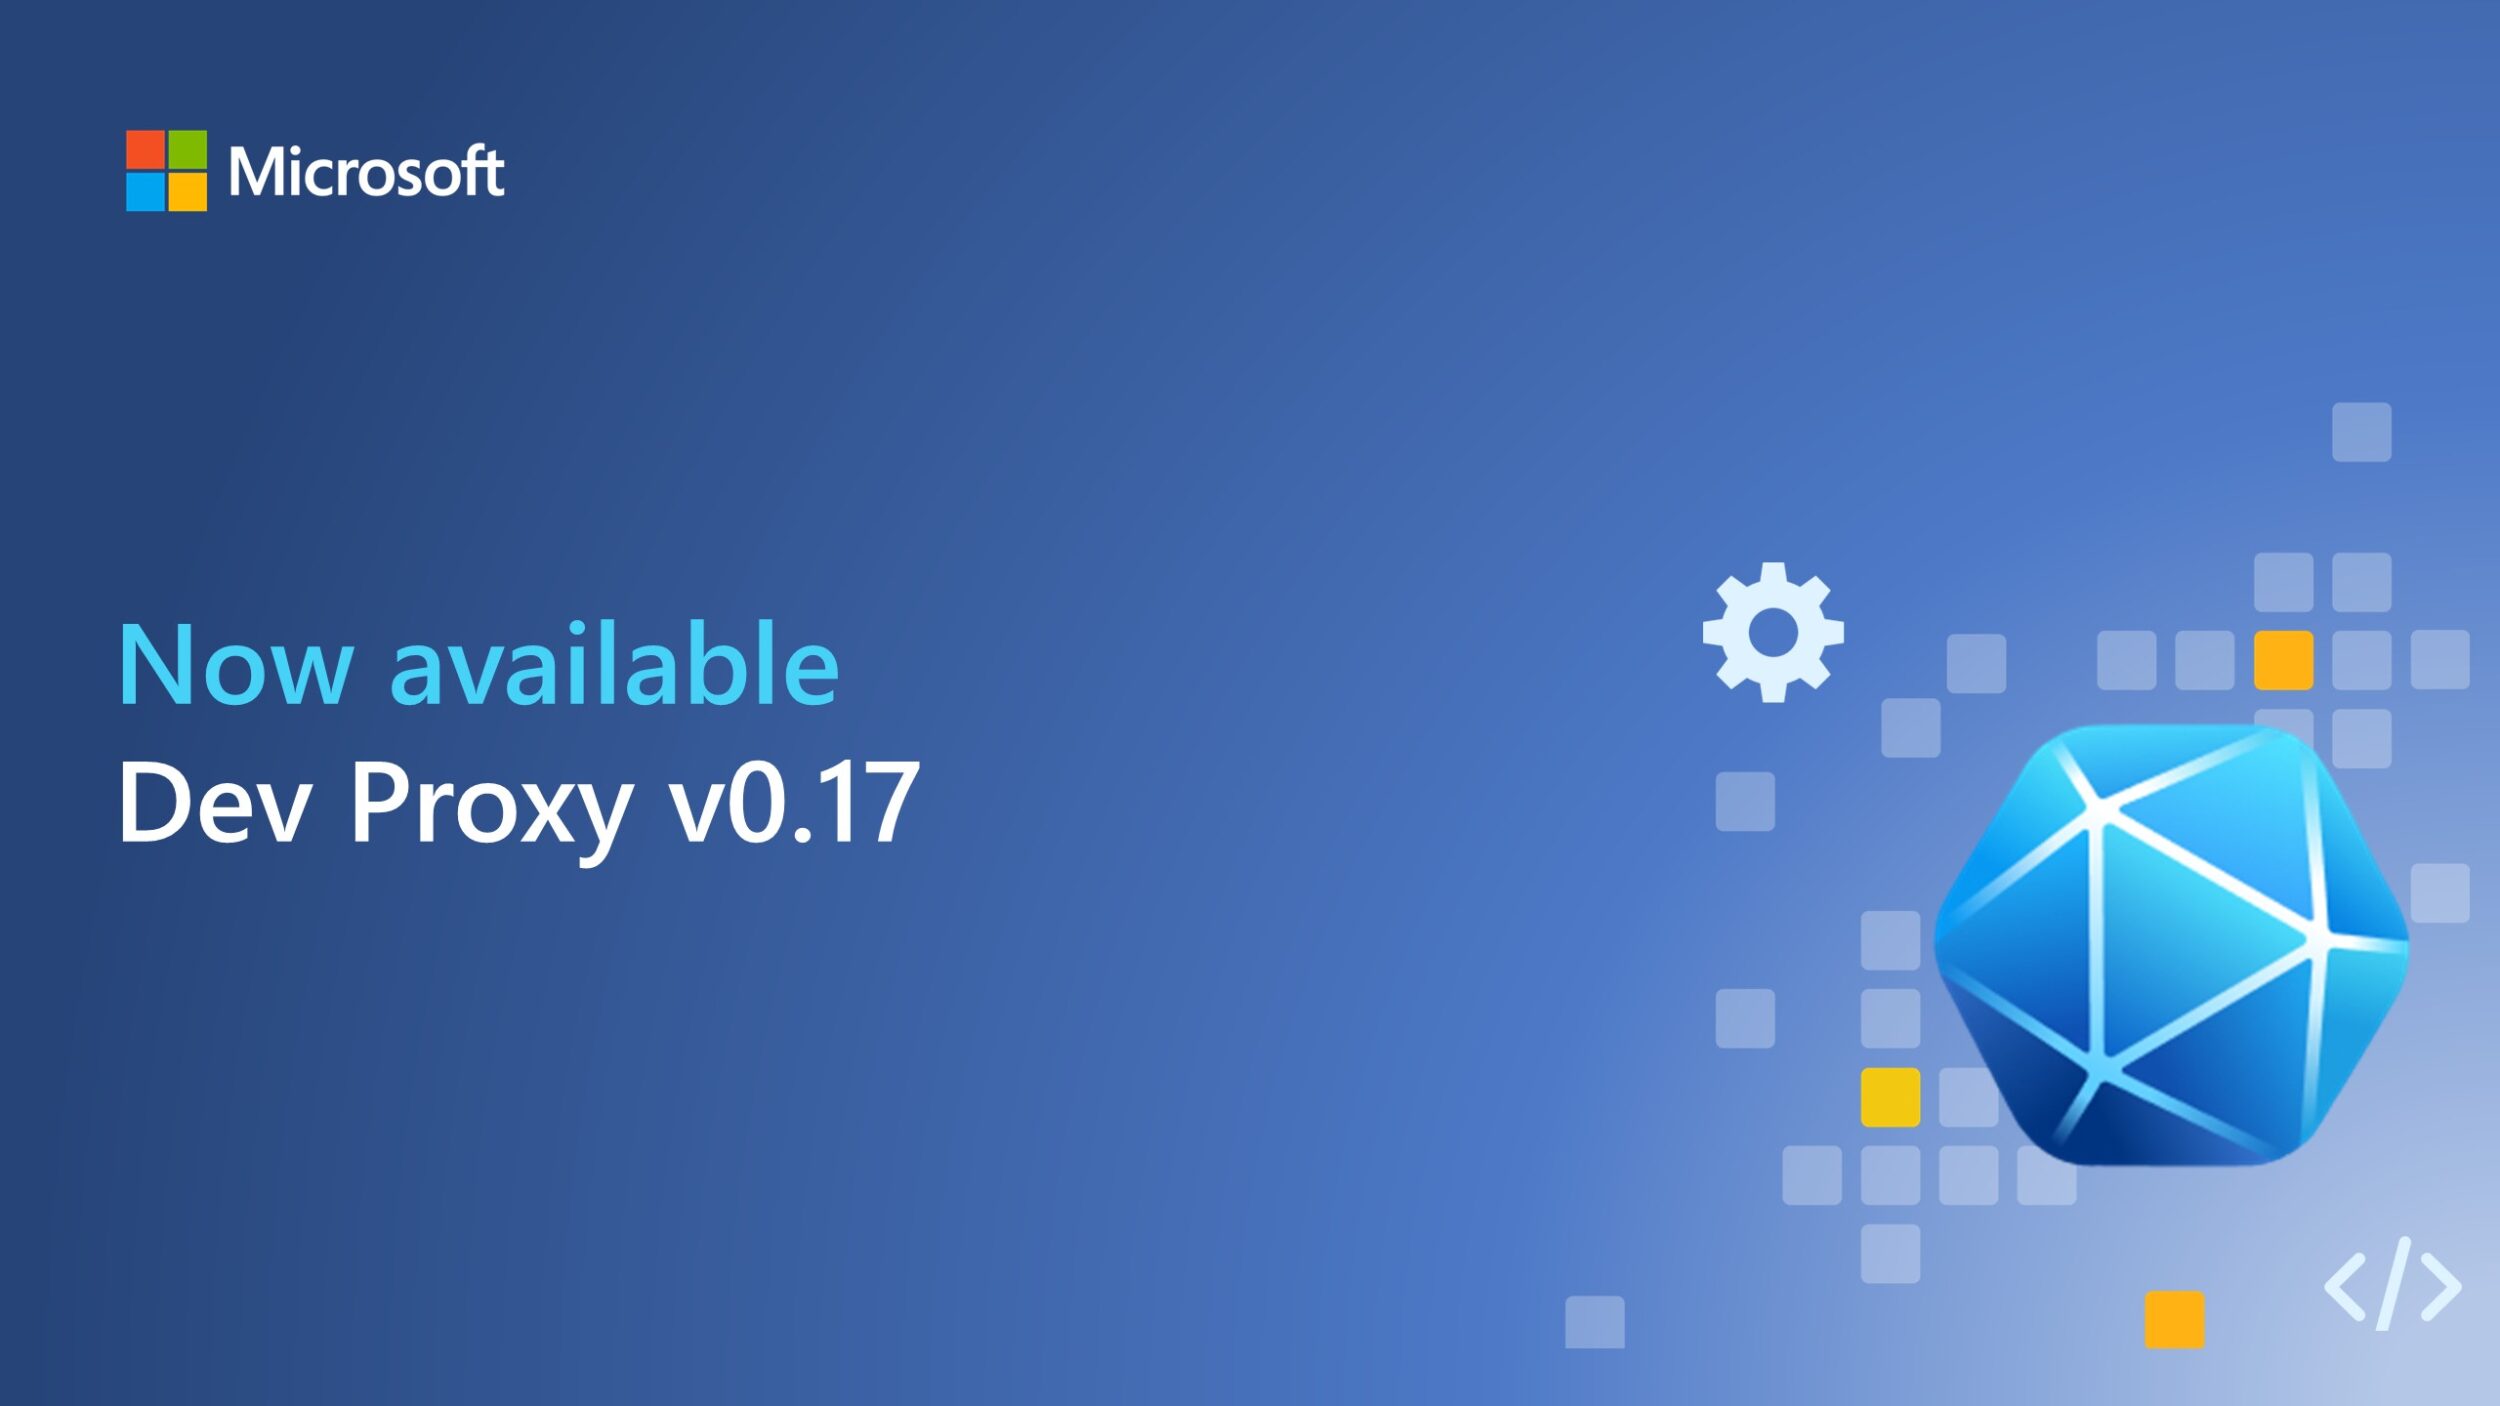 Dev Proxy v0.17 includes integration with Azure API Center